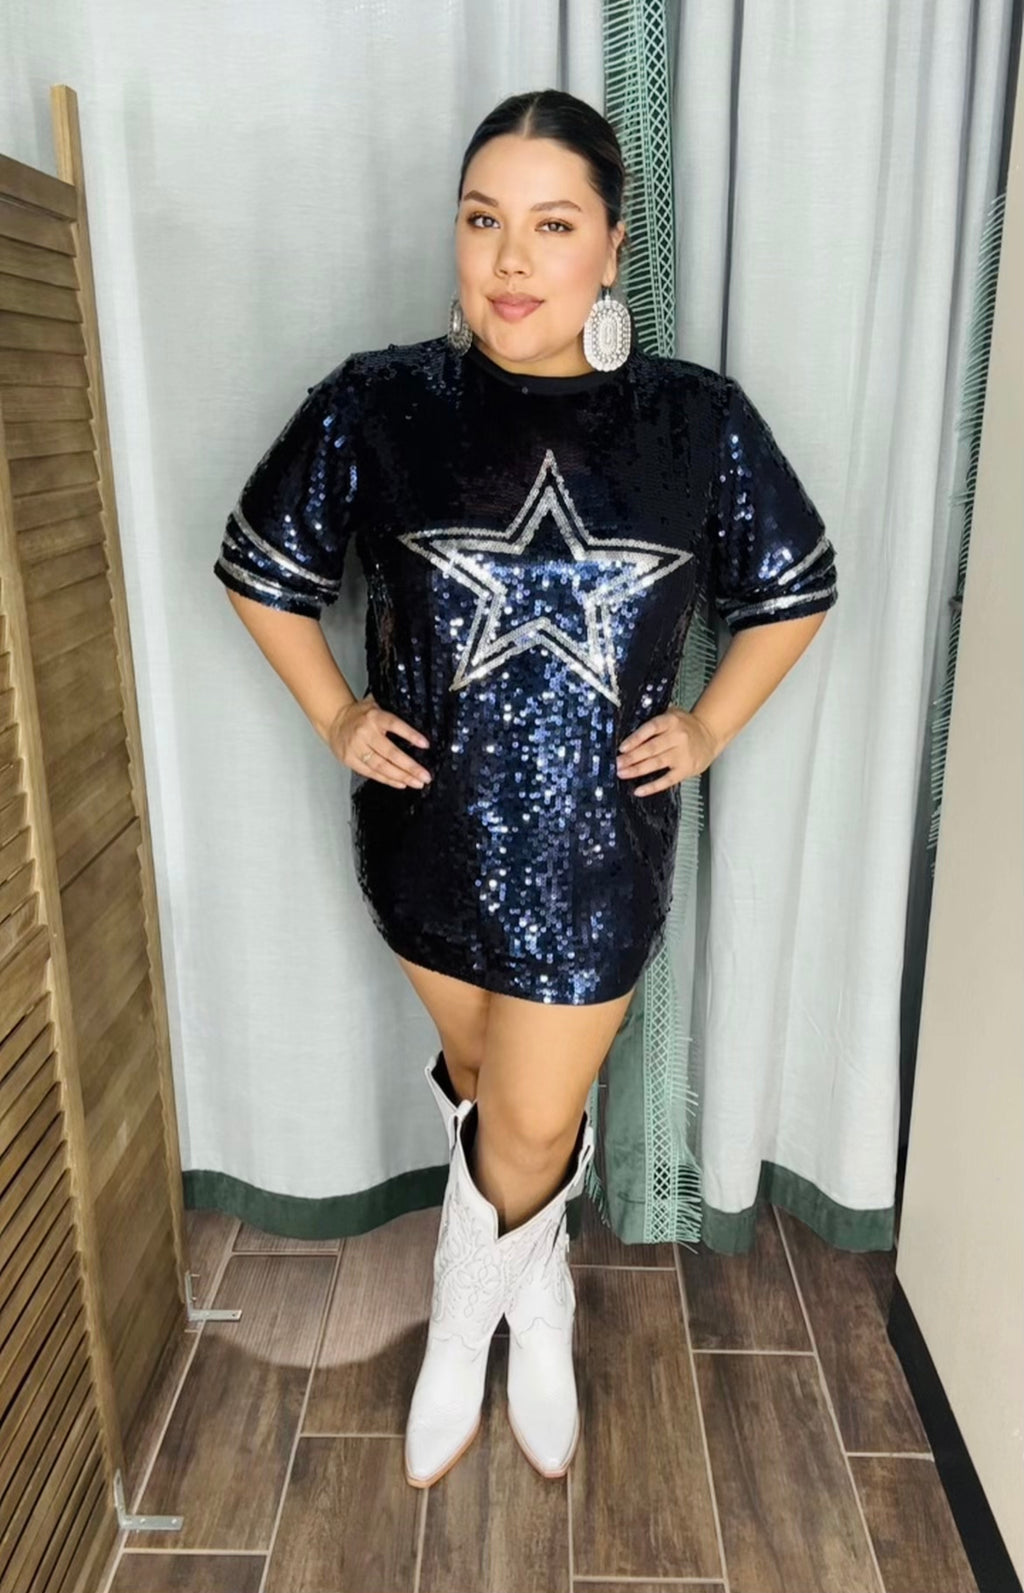 Dallas Cowboys Star Sequin Jerseys